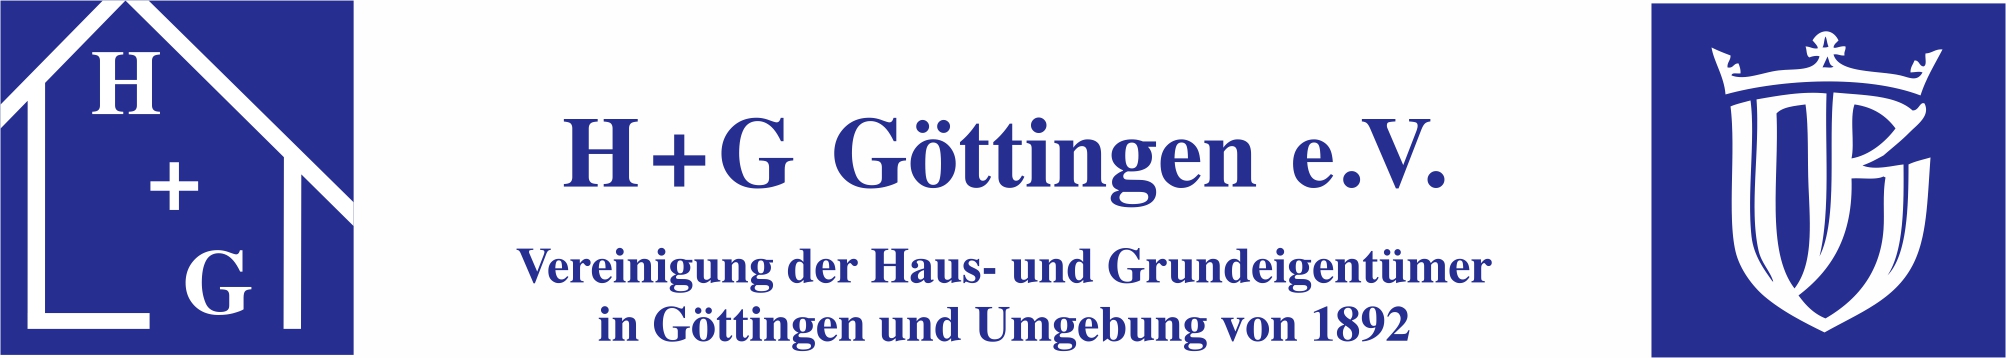 H + G Göttingen e.V. Logo